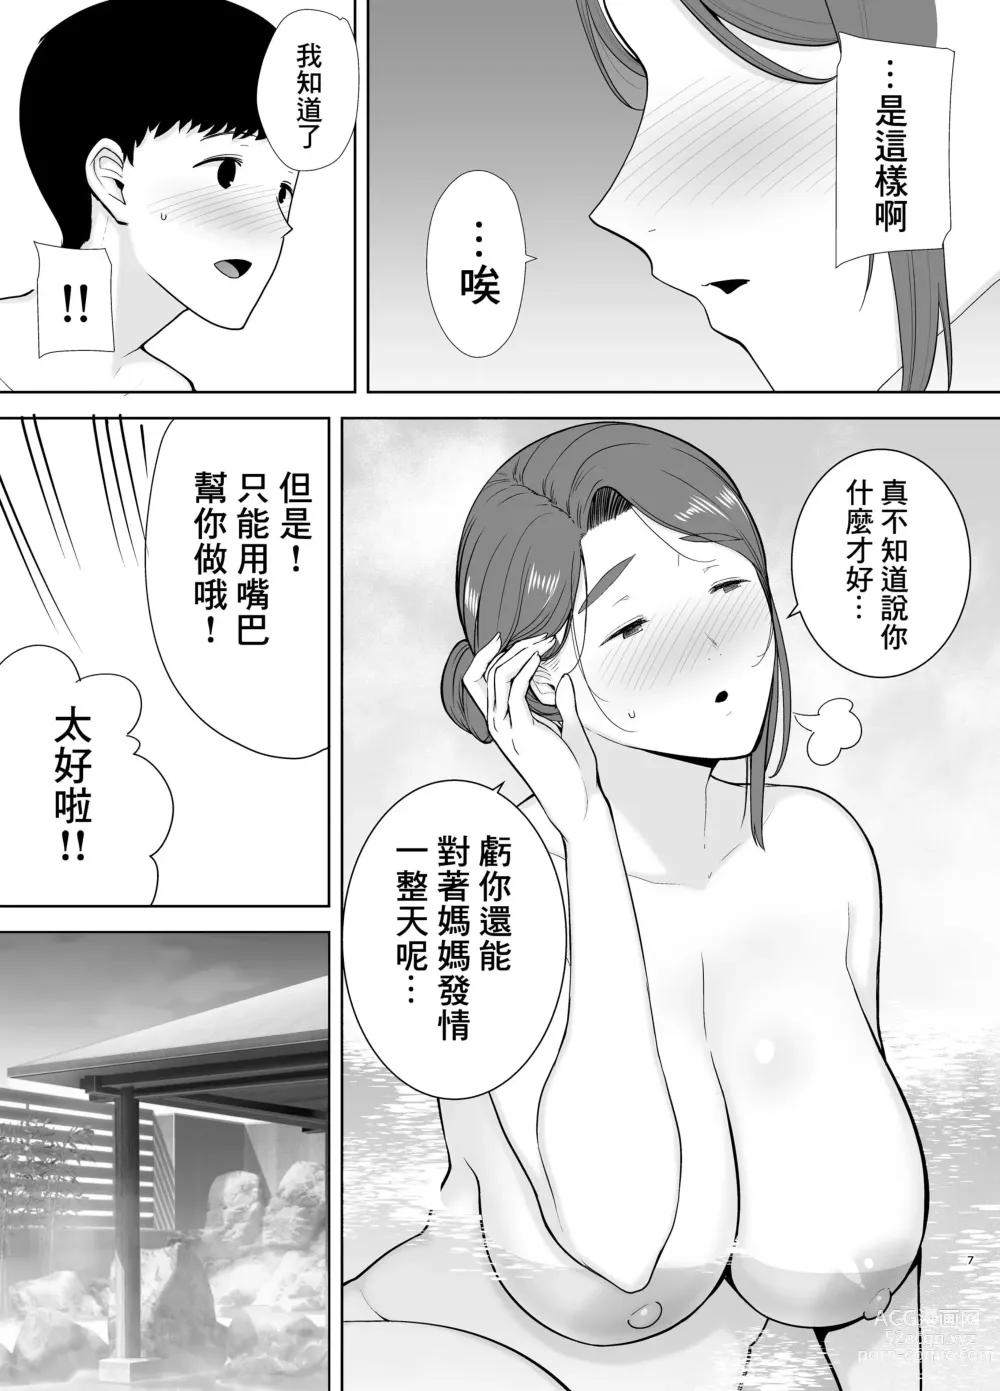 Page 7 of doujinshi 母印堂4